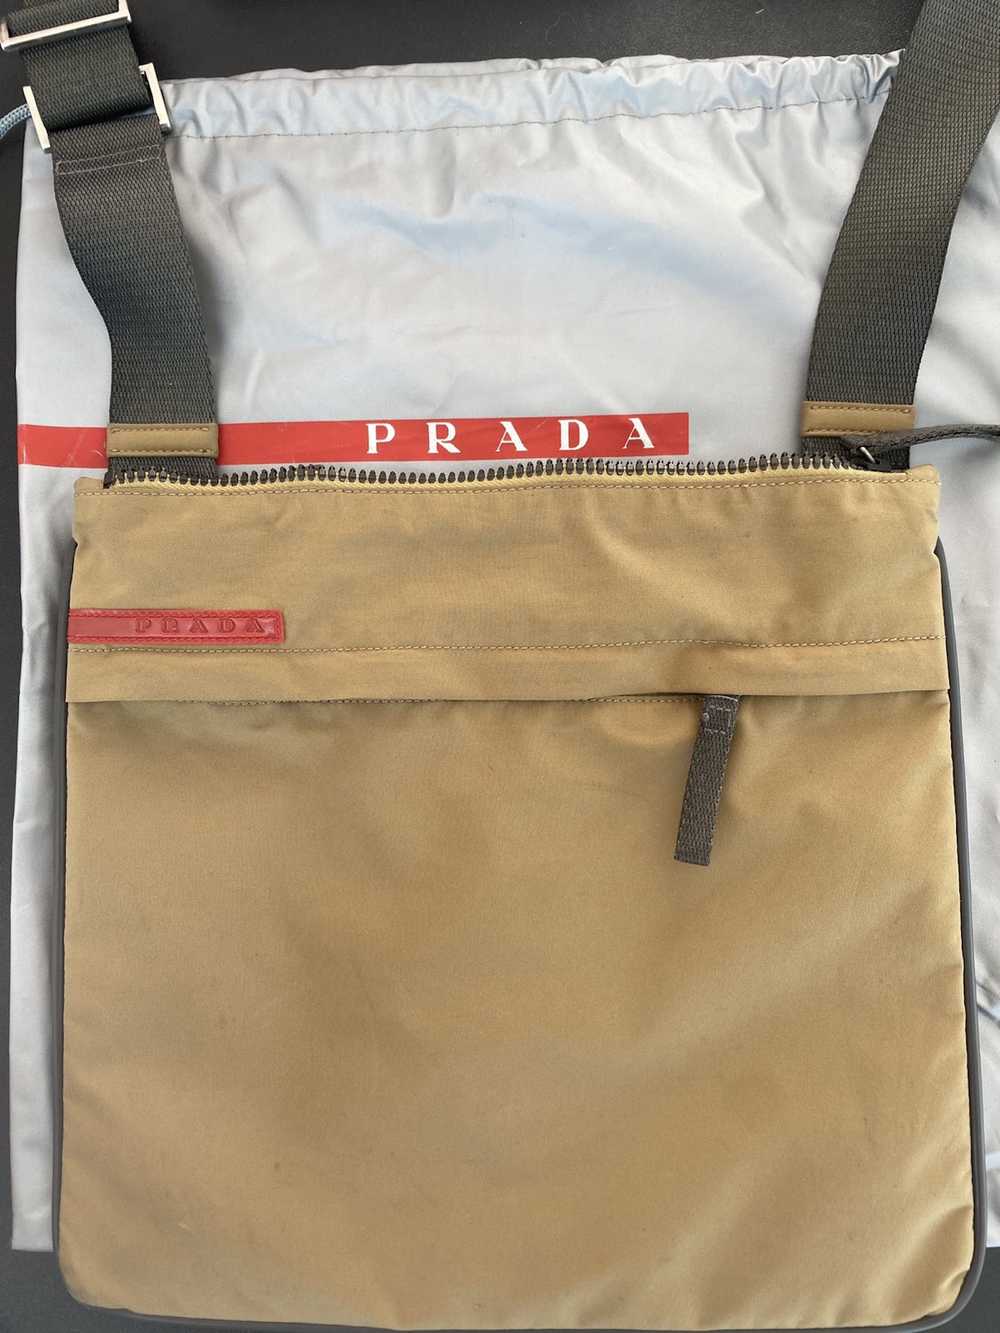 Prada Prada Linea Rossa crossbody bag - image 4